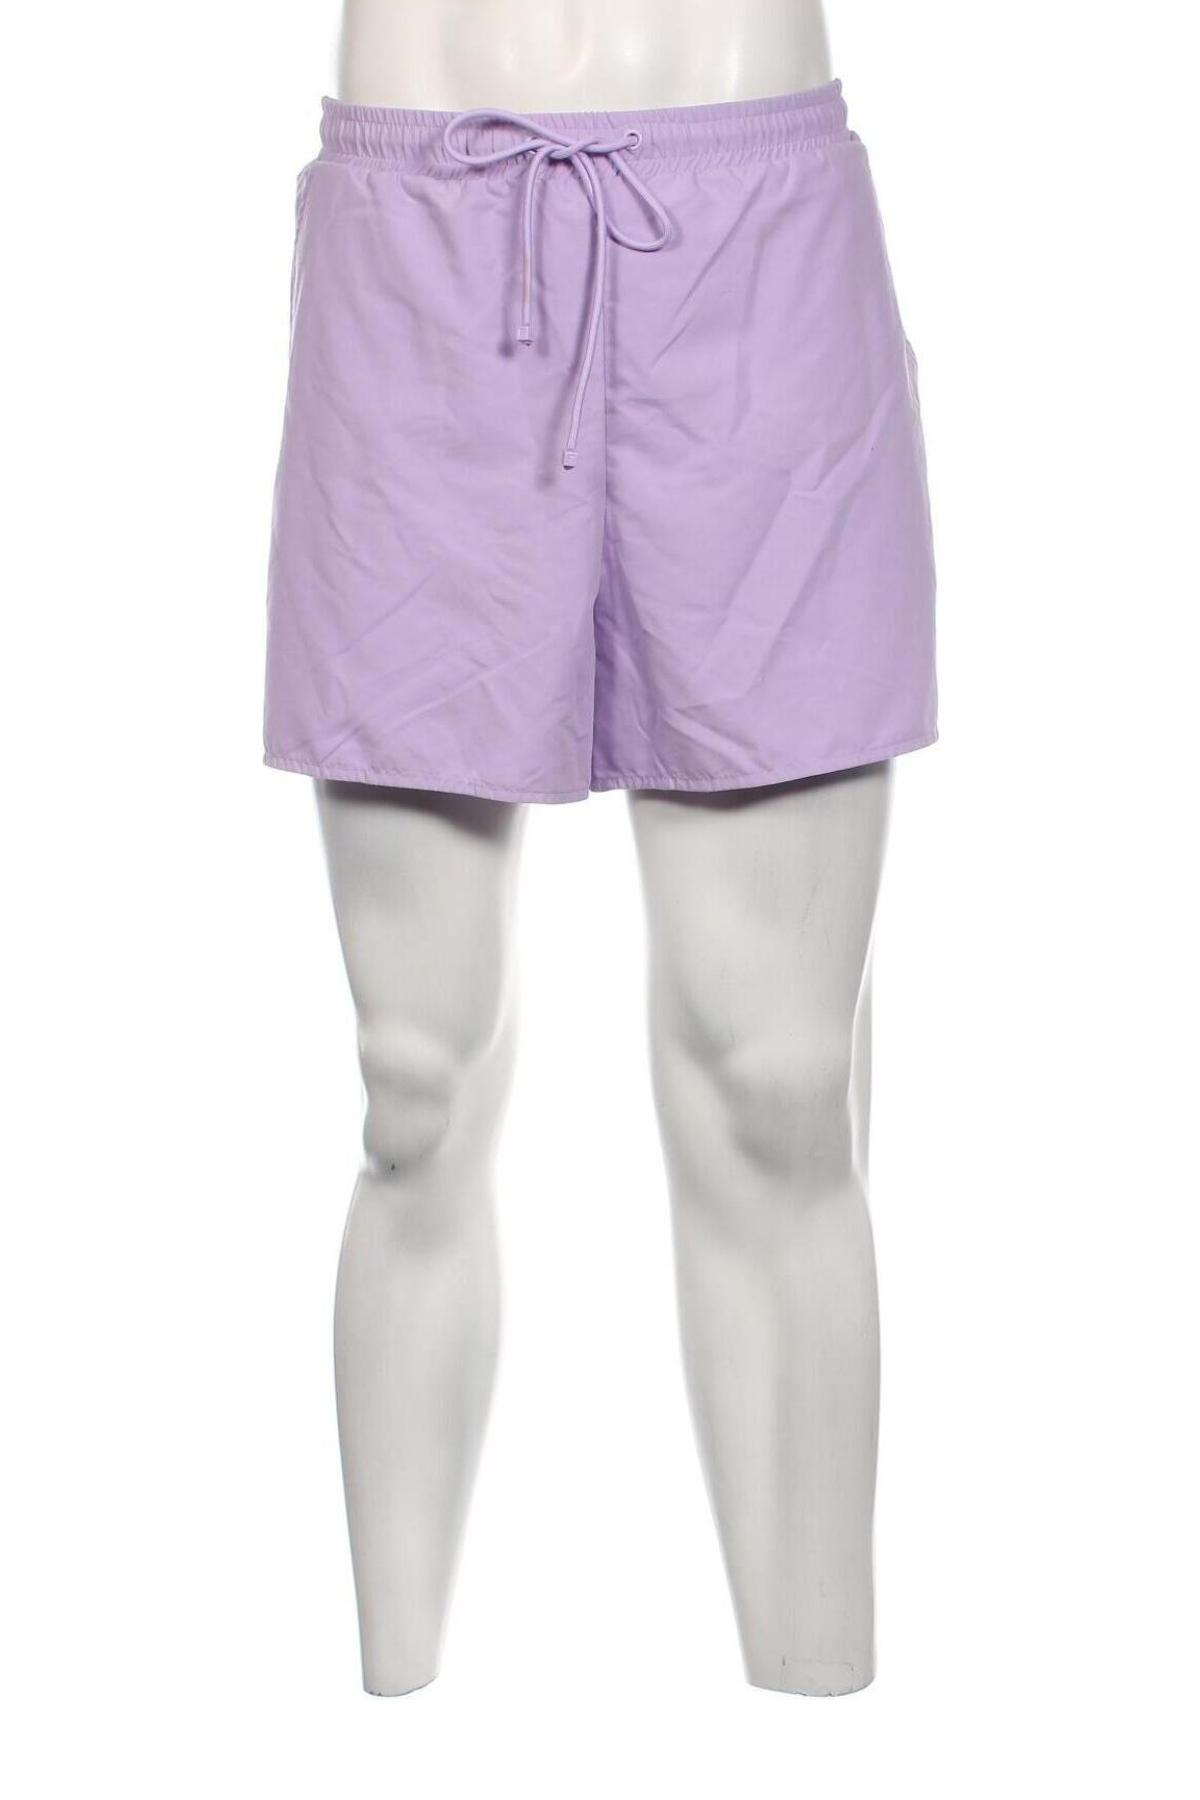 Ανδρικό κοντό παντελόνι Dan Fox X About You, Μέγεθος XL, Χρώμα Βιολετί, Τιμή 22,43 €